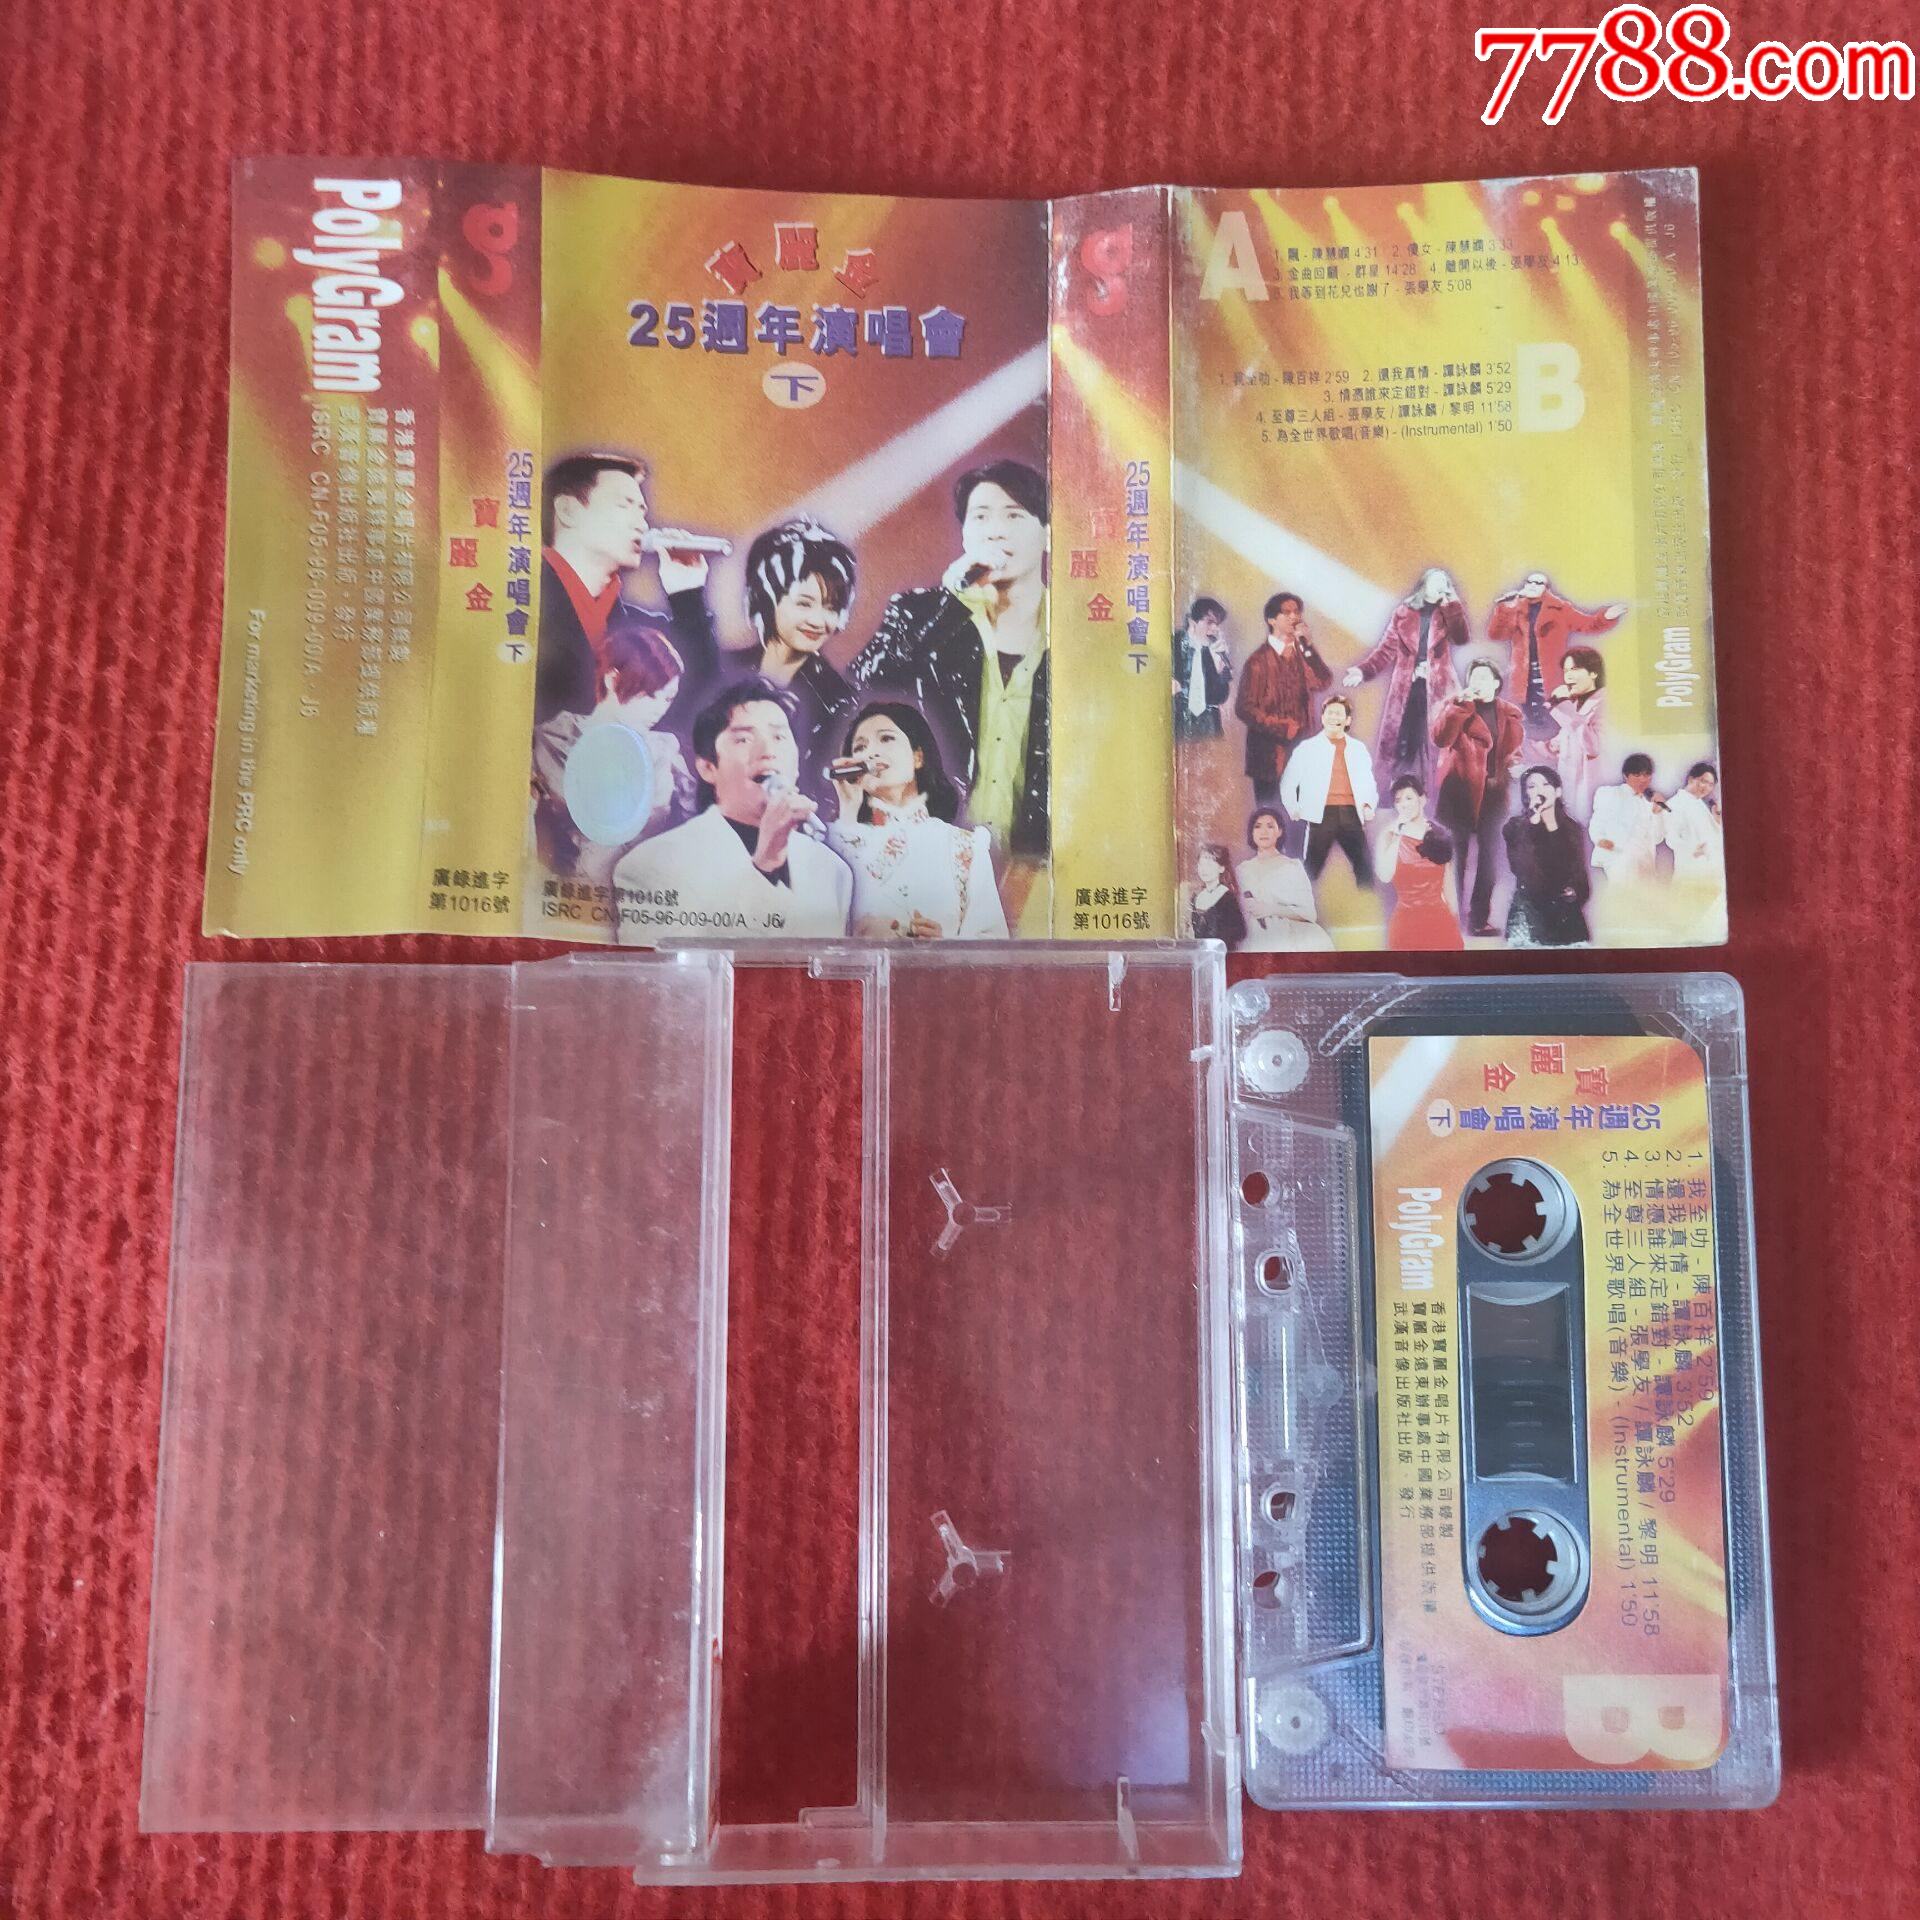 原装正版磁带宝丽金25周年演唱会下武汉音像出版社出版